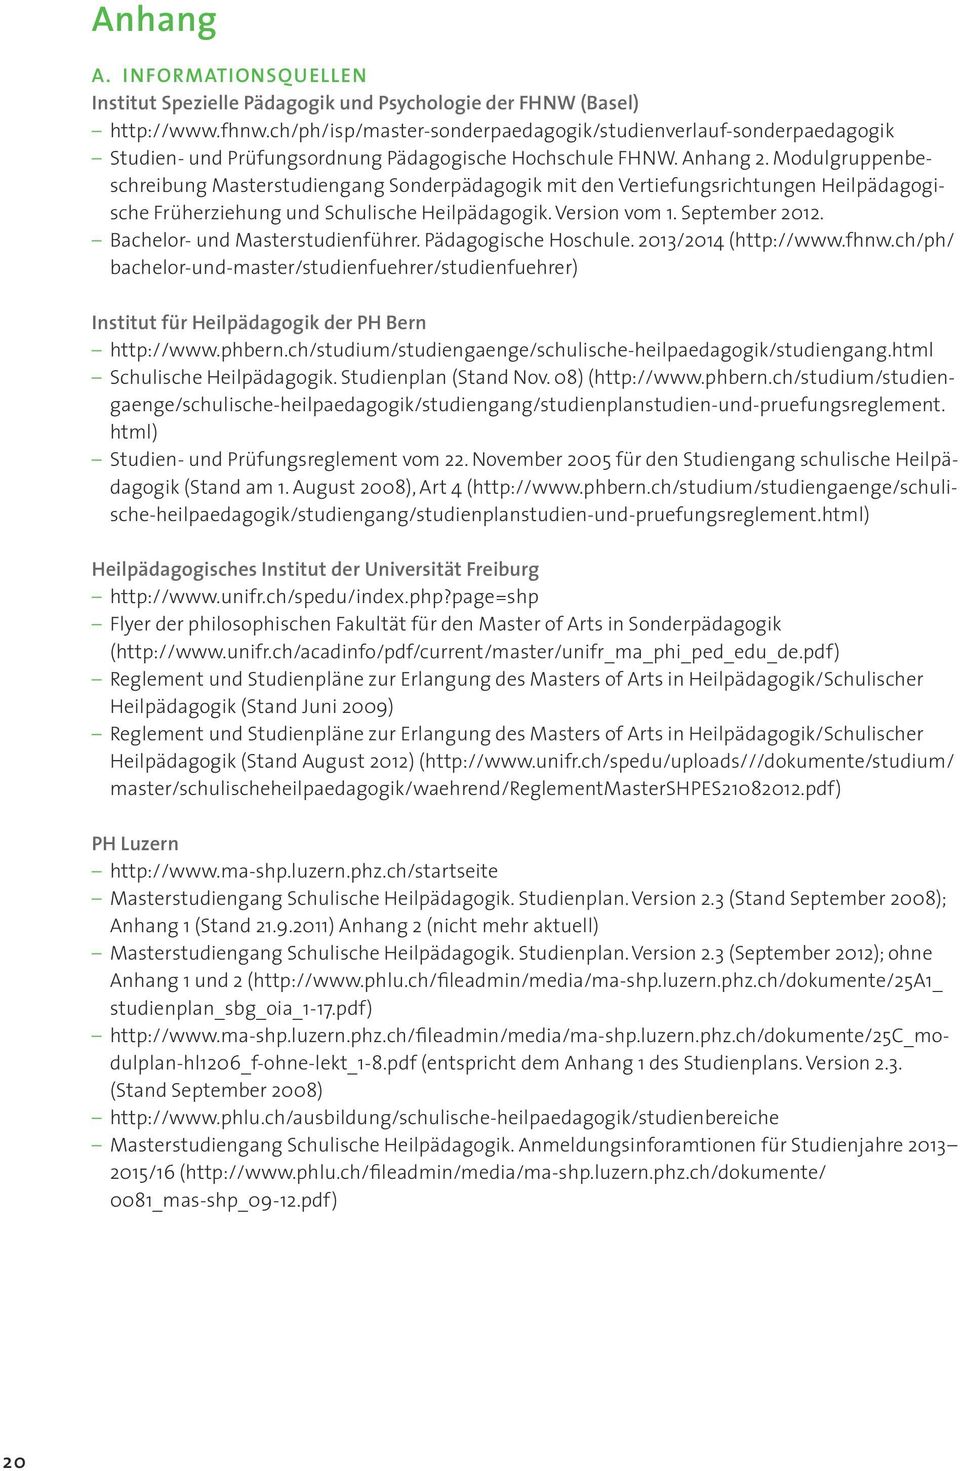 Modulgruppenbeschreibung Masterstudiengang Sonderpädagogik mit den Vertiefungsrichtungen Heilpädagogische Früherziehung und Schulische Heilpädagogik. Version vom 1. September 2012.